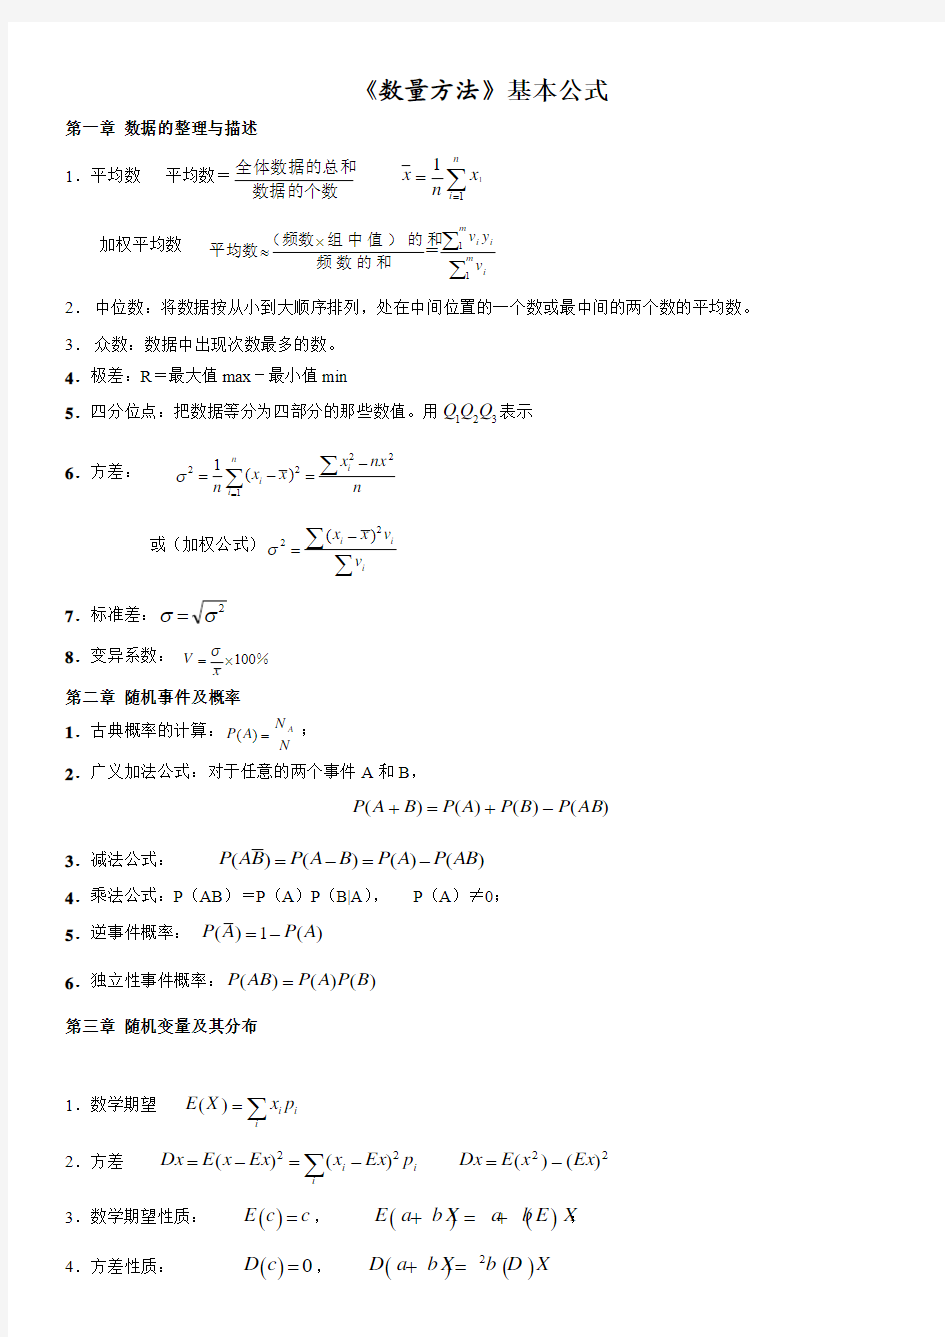 数量方法基本公式(自学考试中英合作商务管理与金融管理专业)